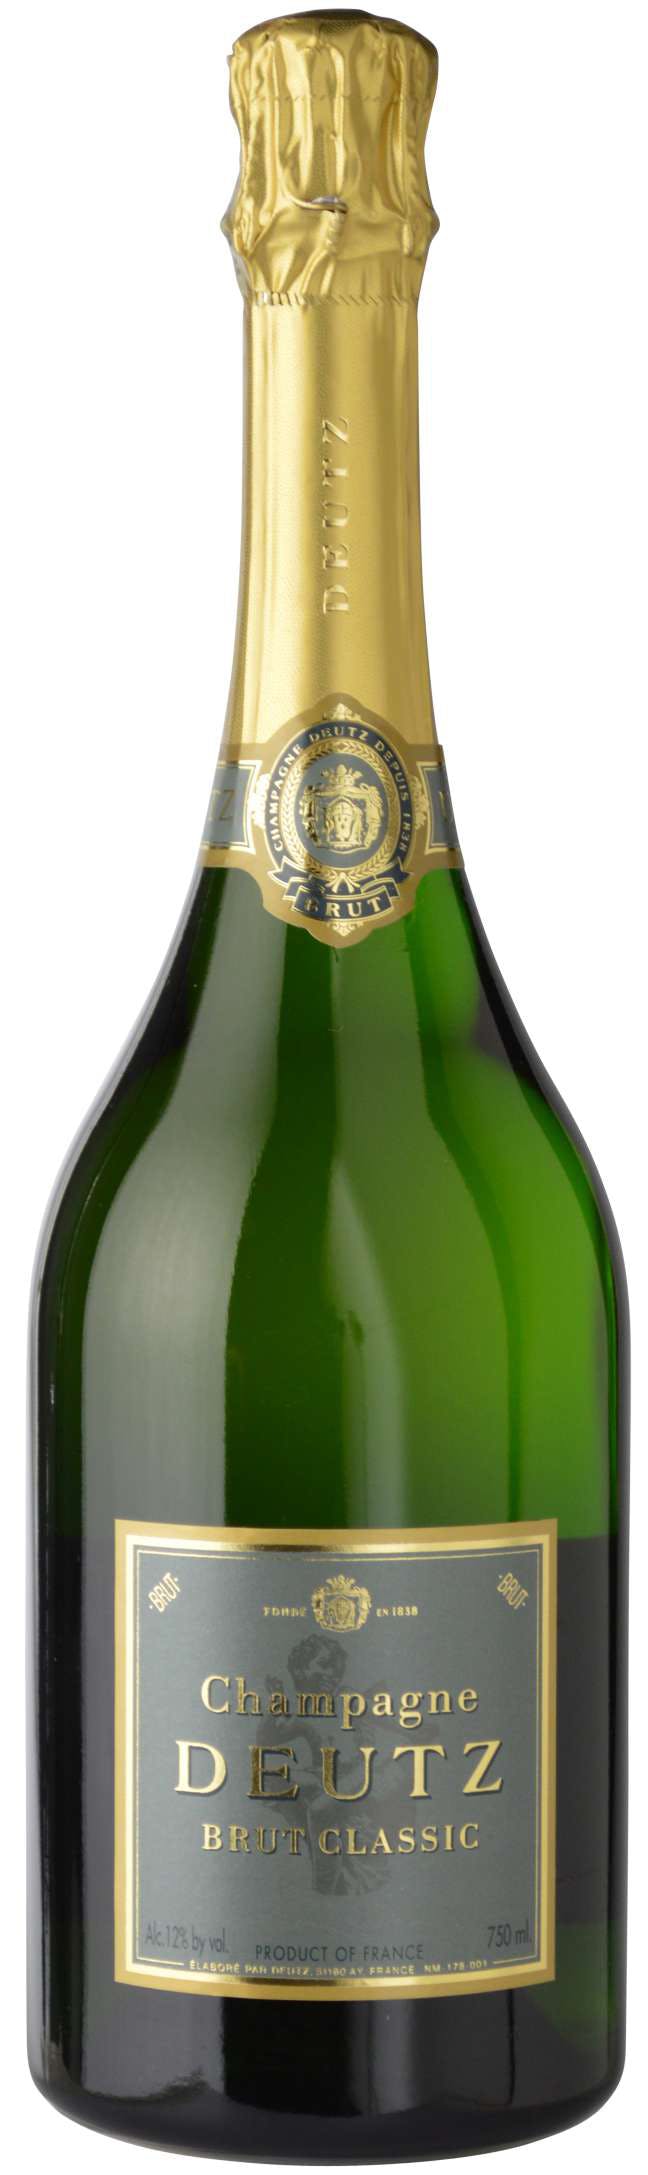 XXL roter Champagner Aschenbecher Piper-Heidsieck Vintage Steingut  Werbeartikel Made in France Champagne Reims France Vintage -  Österreich